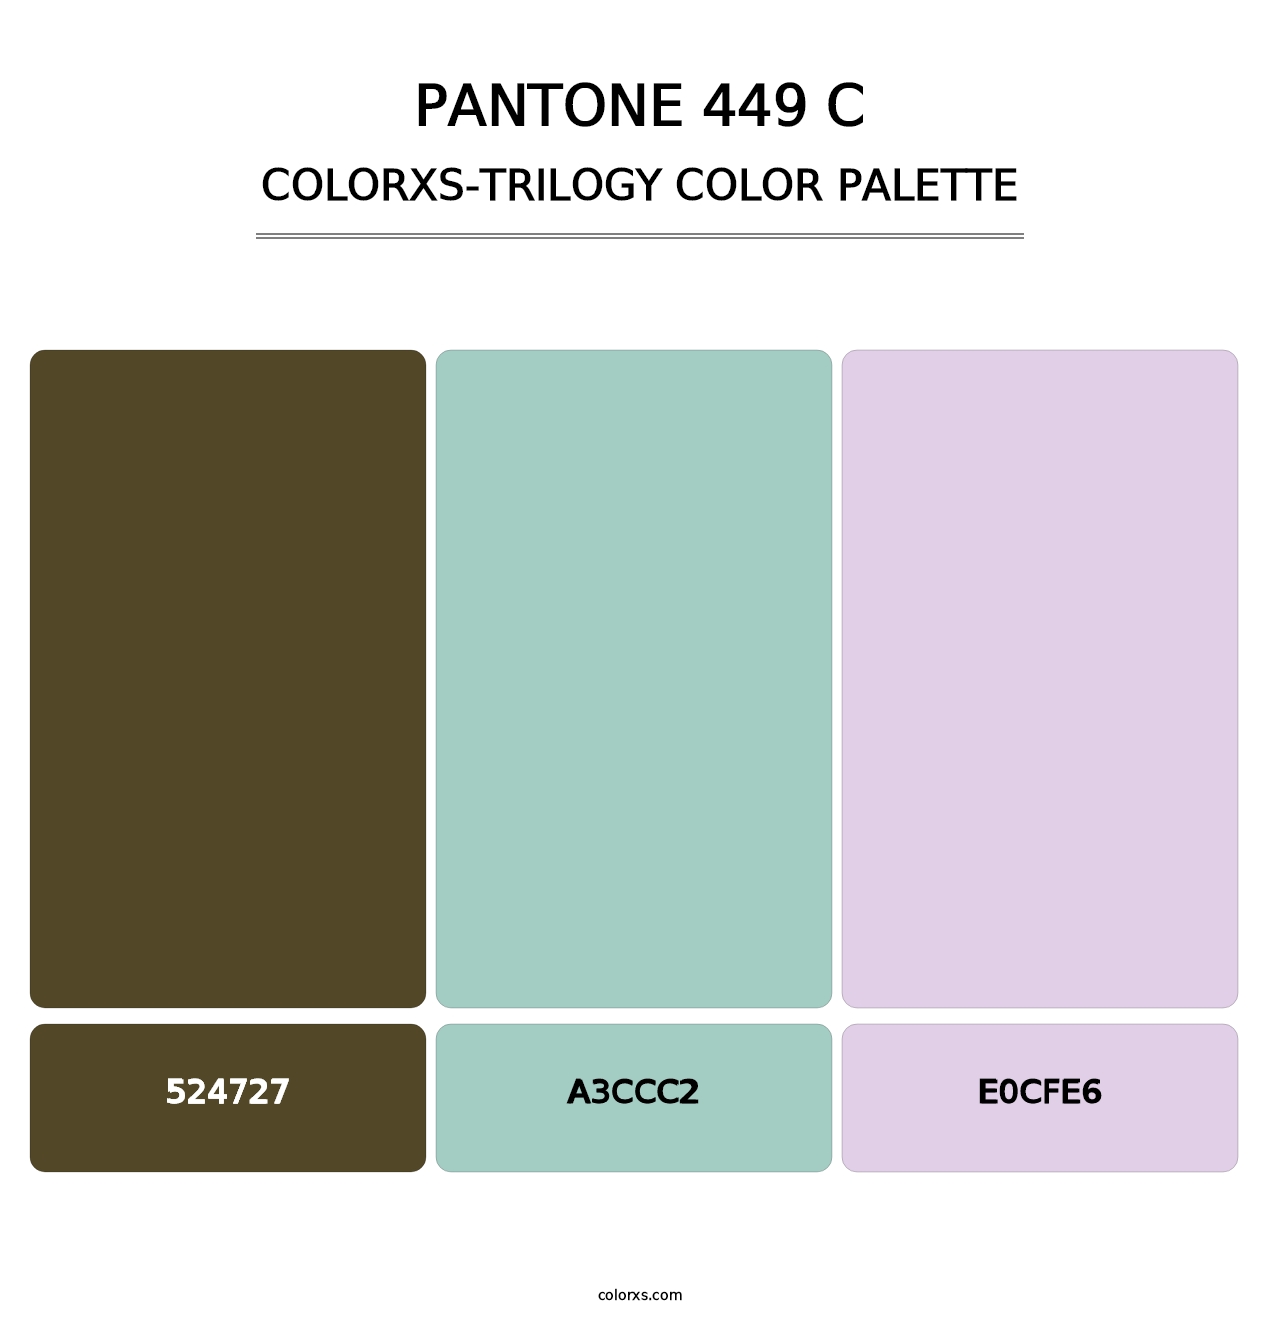 PANTONE 449 C - Colorxs Trilogy Palette